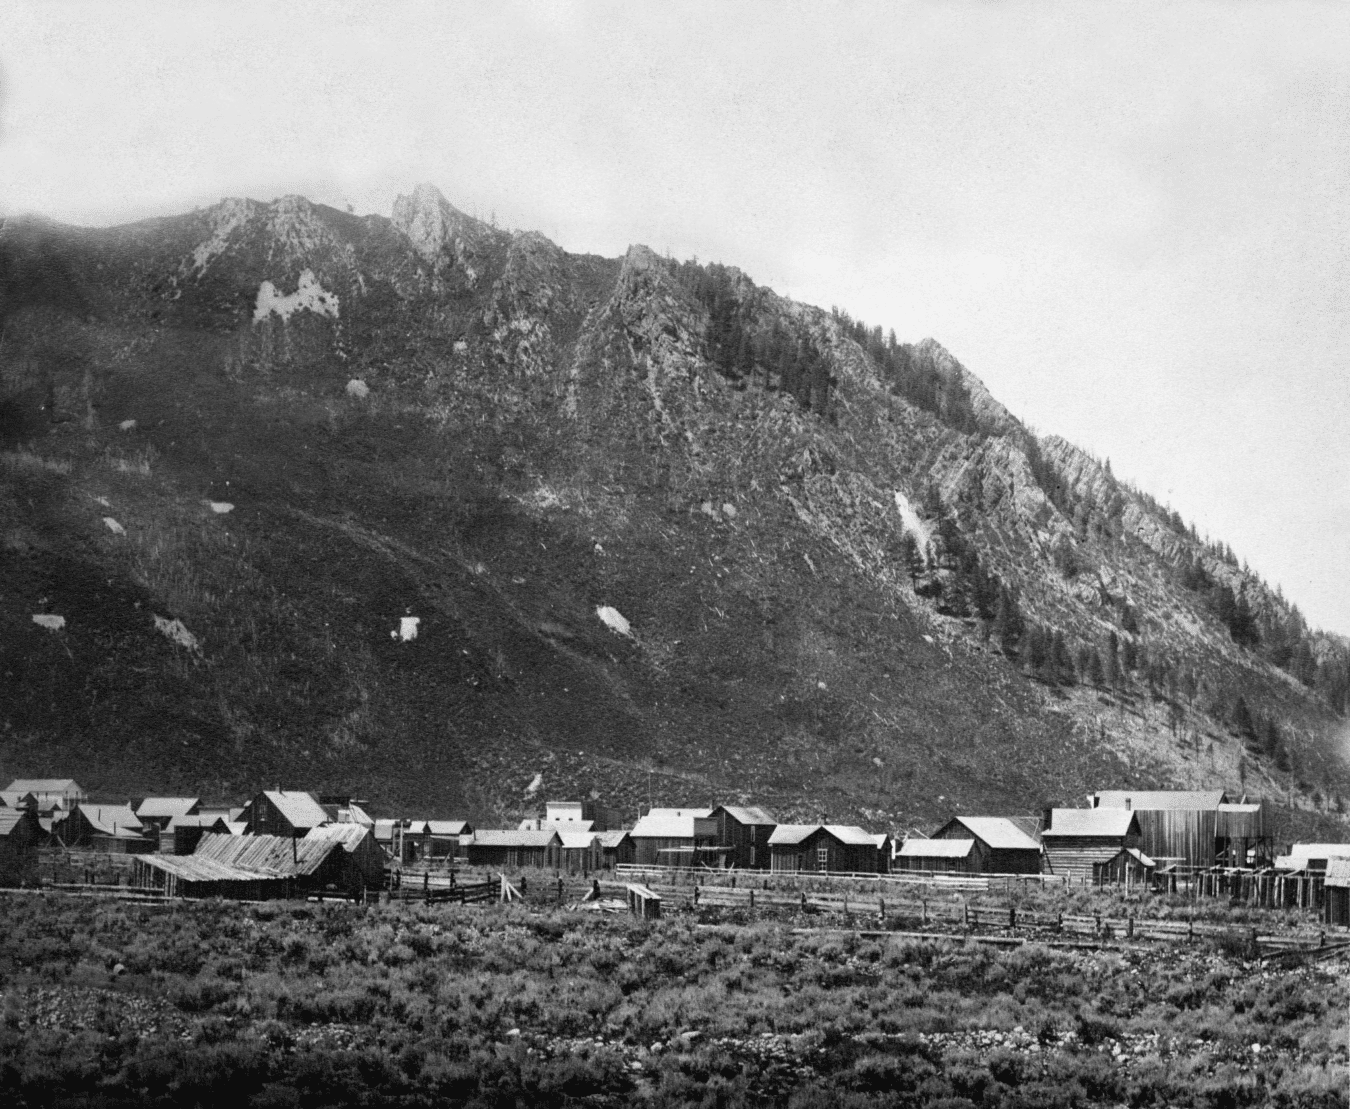 Aspen Colorado from 1882